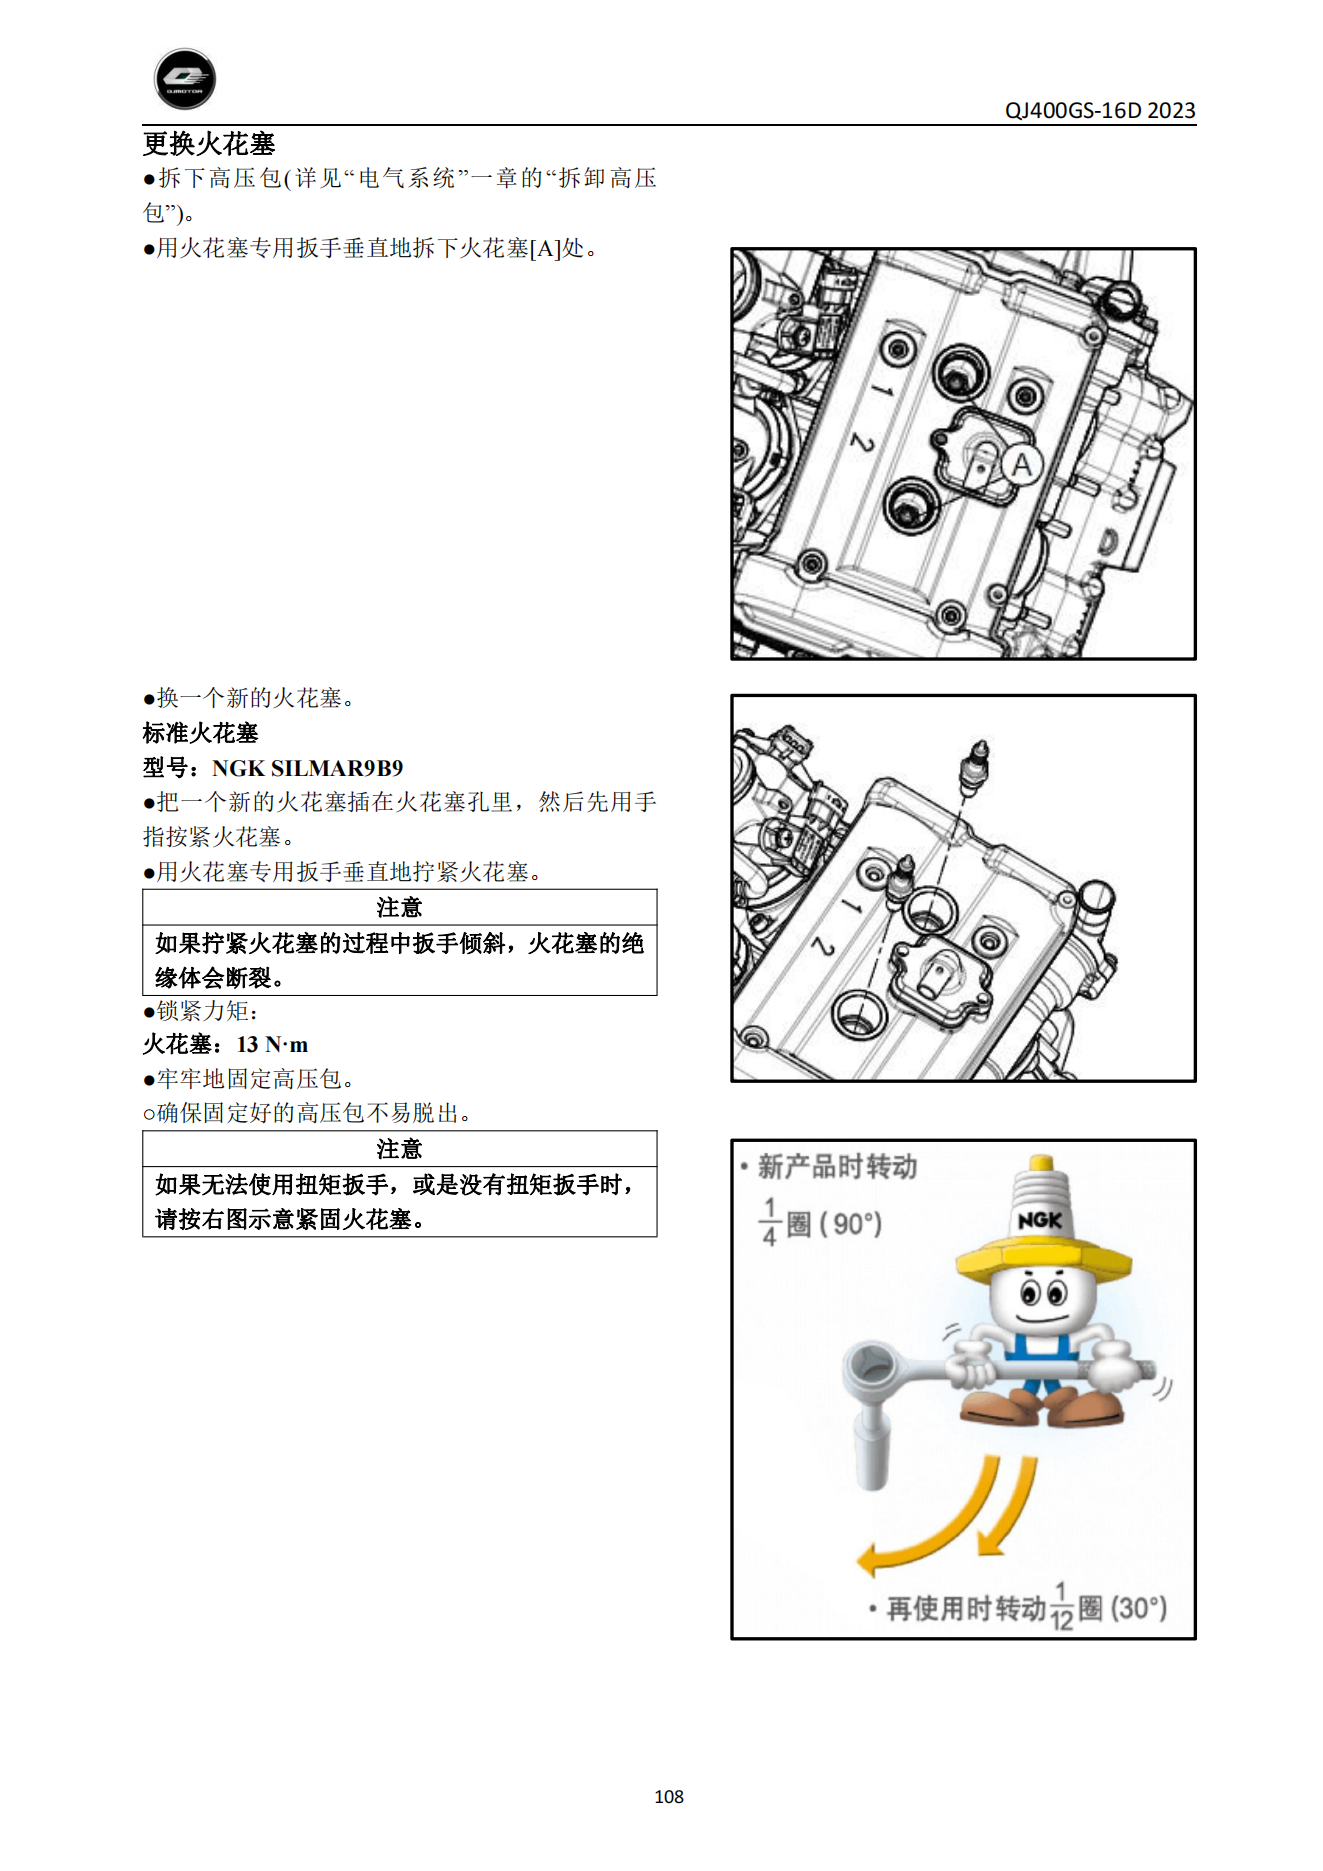 原版中文钱江赛450 QJ400GS-16D维修手册插图4